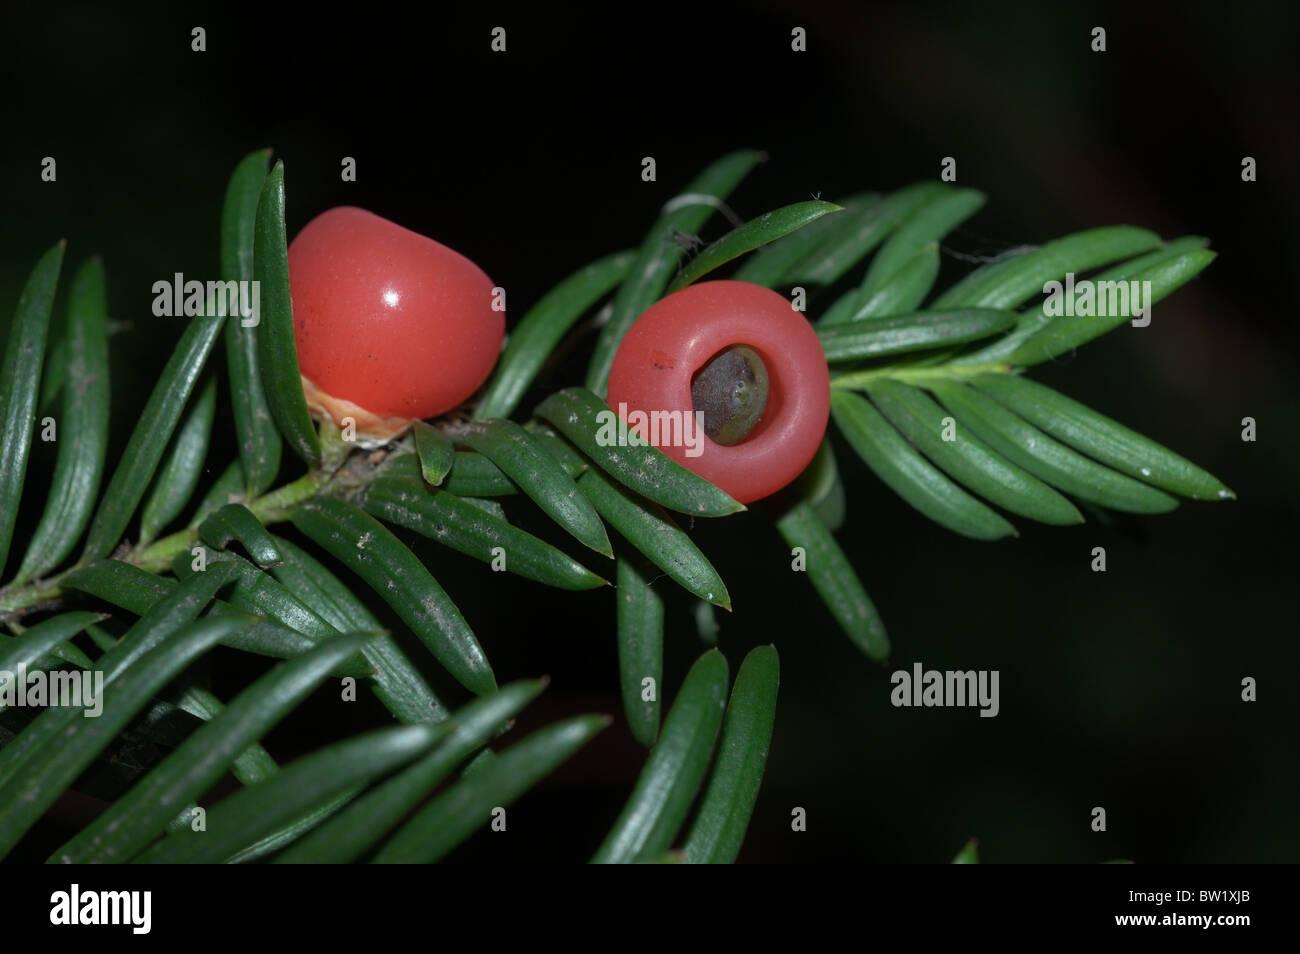 Yew berries (Taxus baccata) Stock Photo